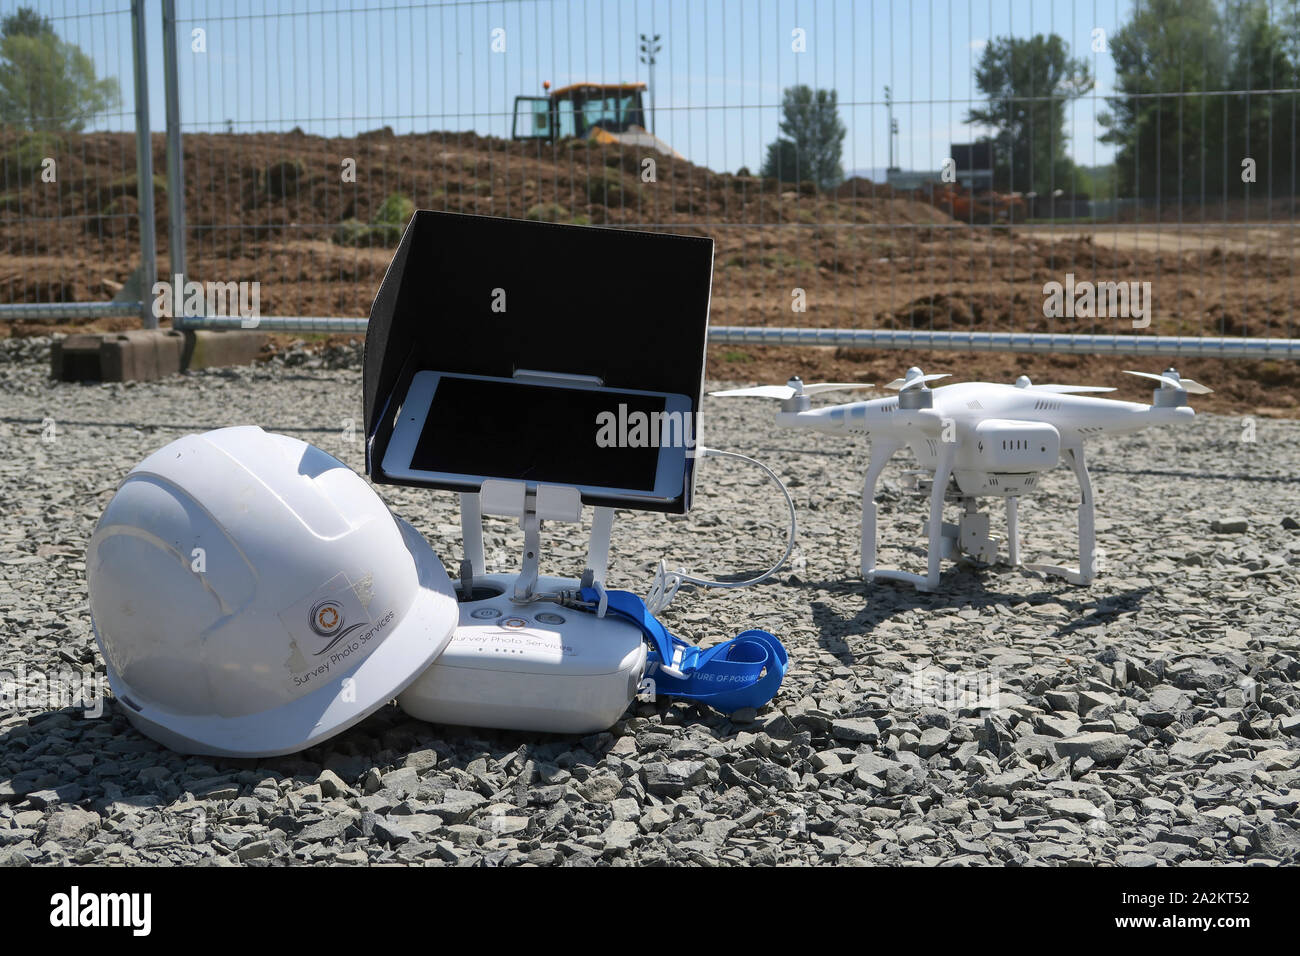 DJI Phantom drone on building site Stock Photo